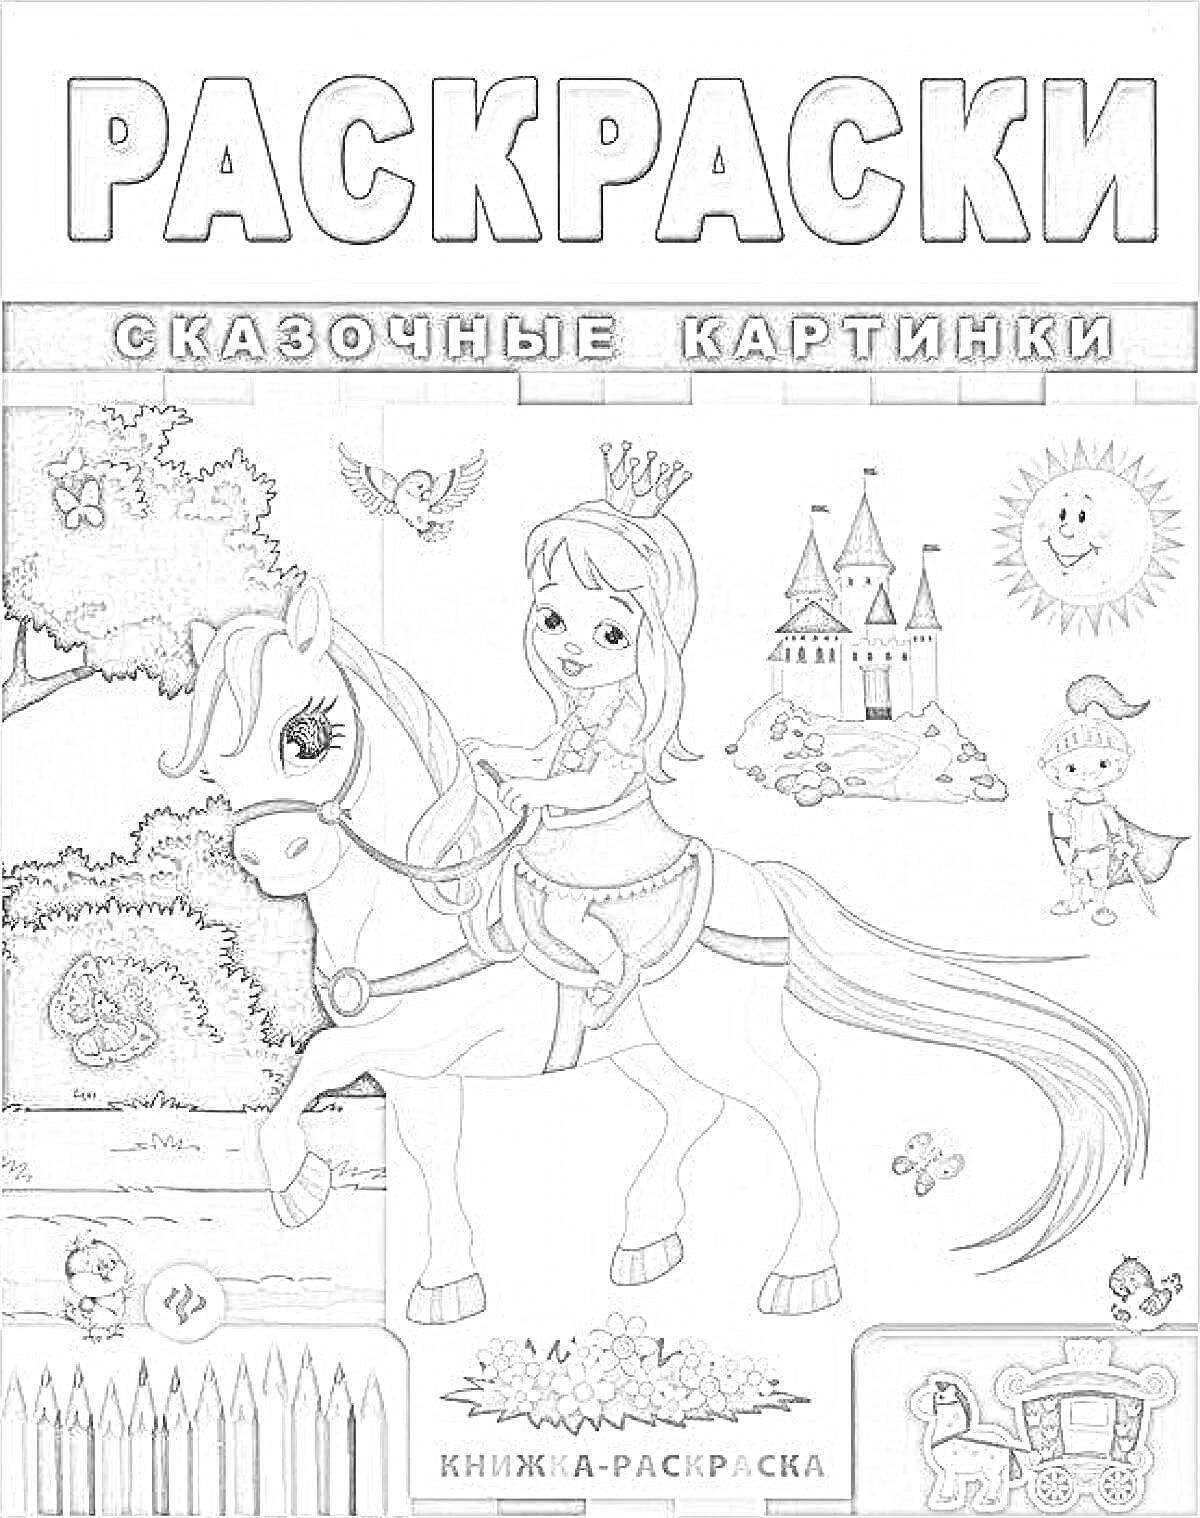 Раскраска Раскраски. Сказочные картинки. Книжка-раскраска. На обложке изображена девушка-принцесса на лошади, рядом замок, деревья, солнце, сова, пруд, рыцарь, карандаши.